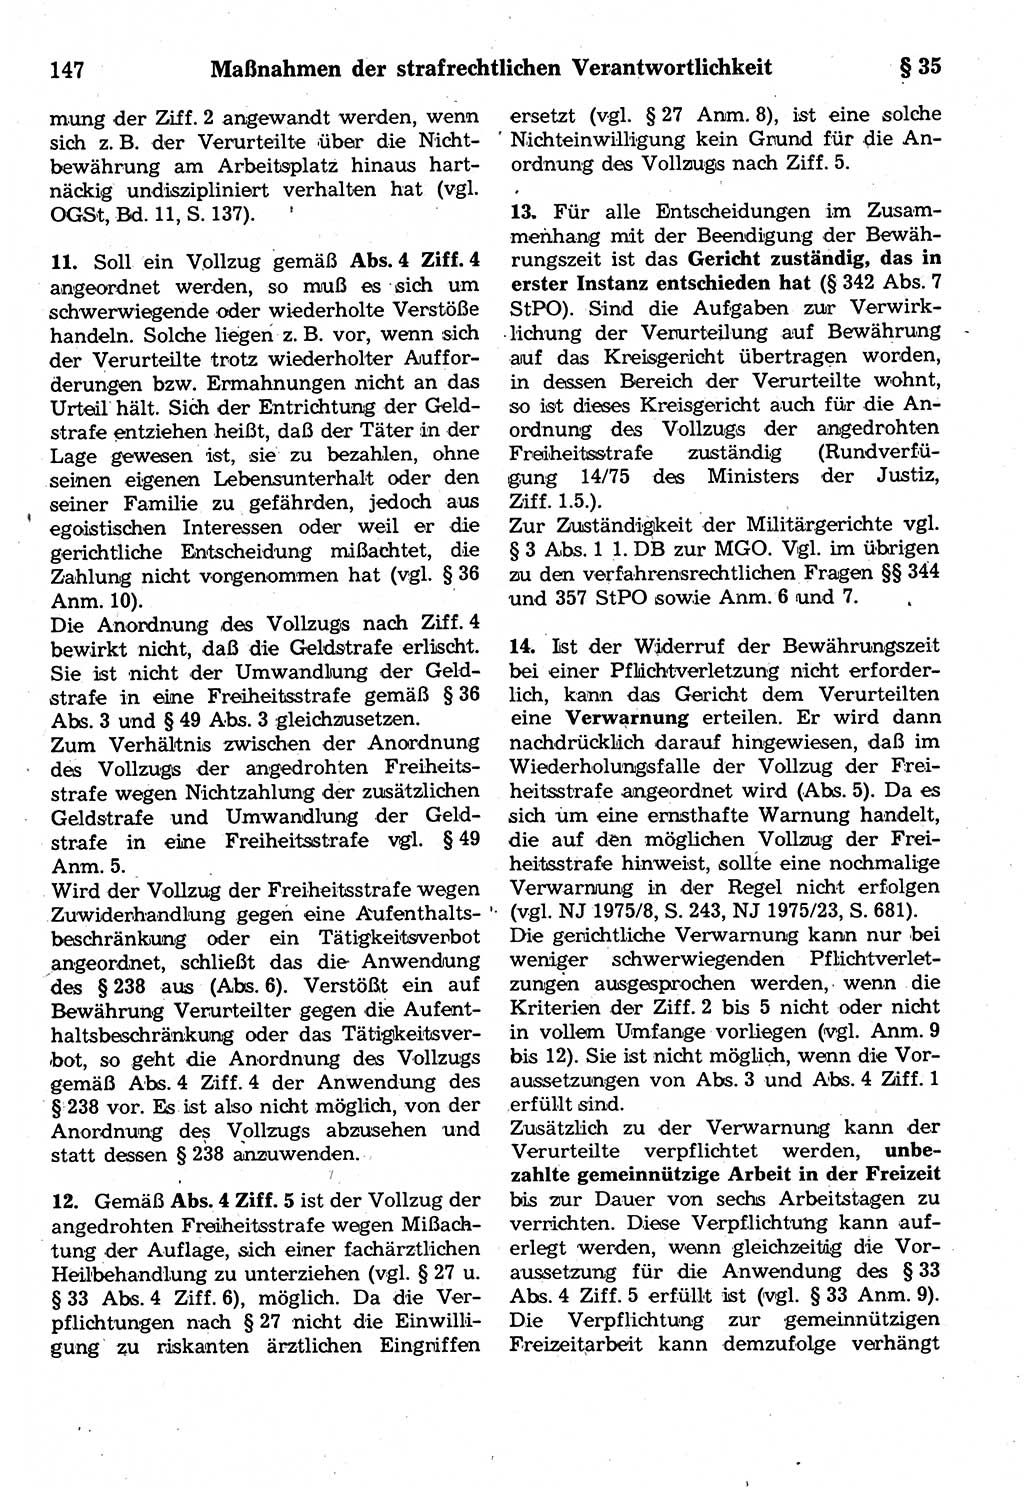 Strafrecht der Deutschen Demokratischen Republik (DDR), Kommentar zum Strafgesetzbuch (StGB) 1987, Seite 147 (Strafr. DDR Komm. StGB 1987, S. 147)